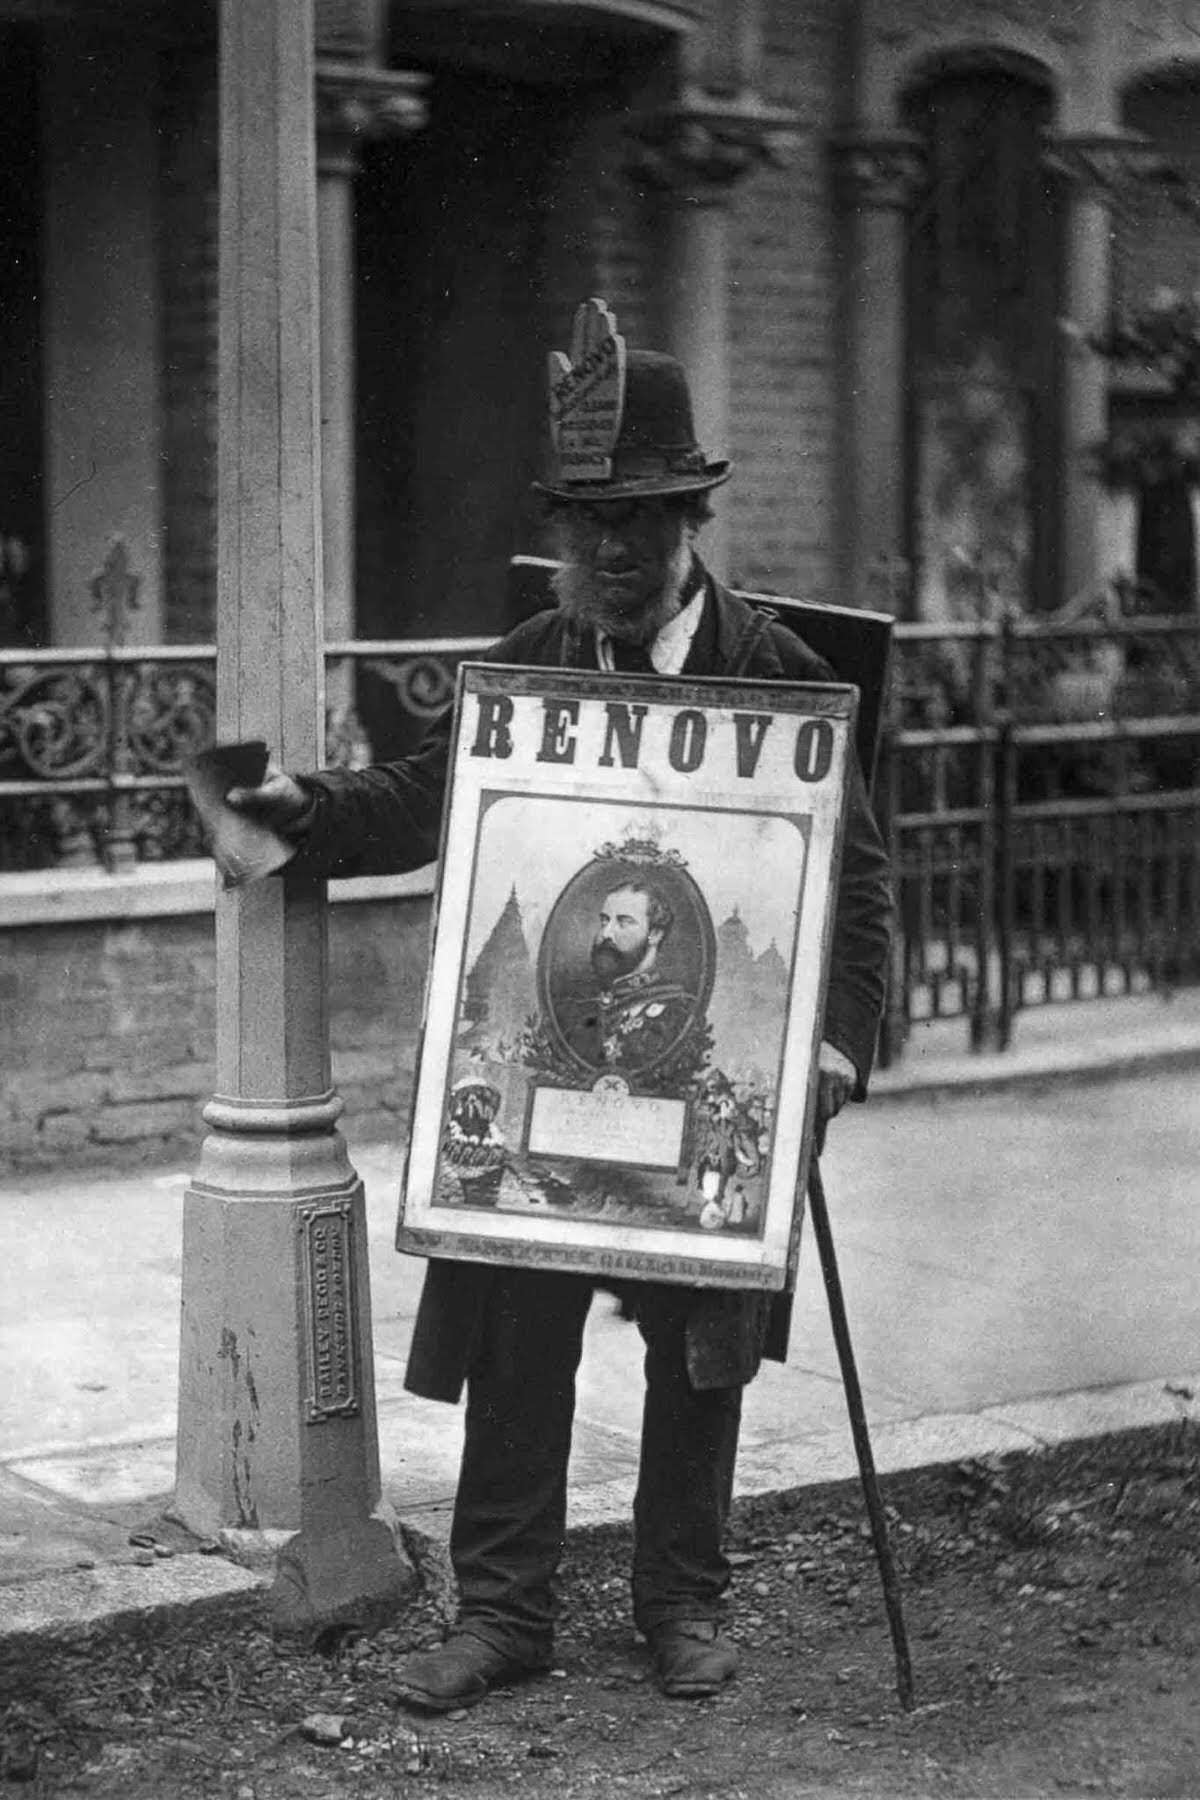 A man wears a sandwich-board advertisement, 1877.